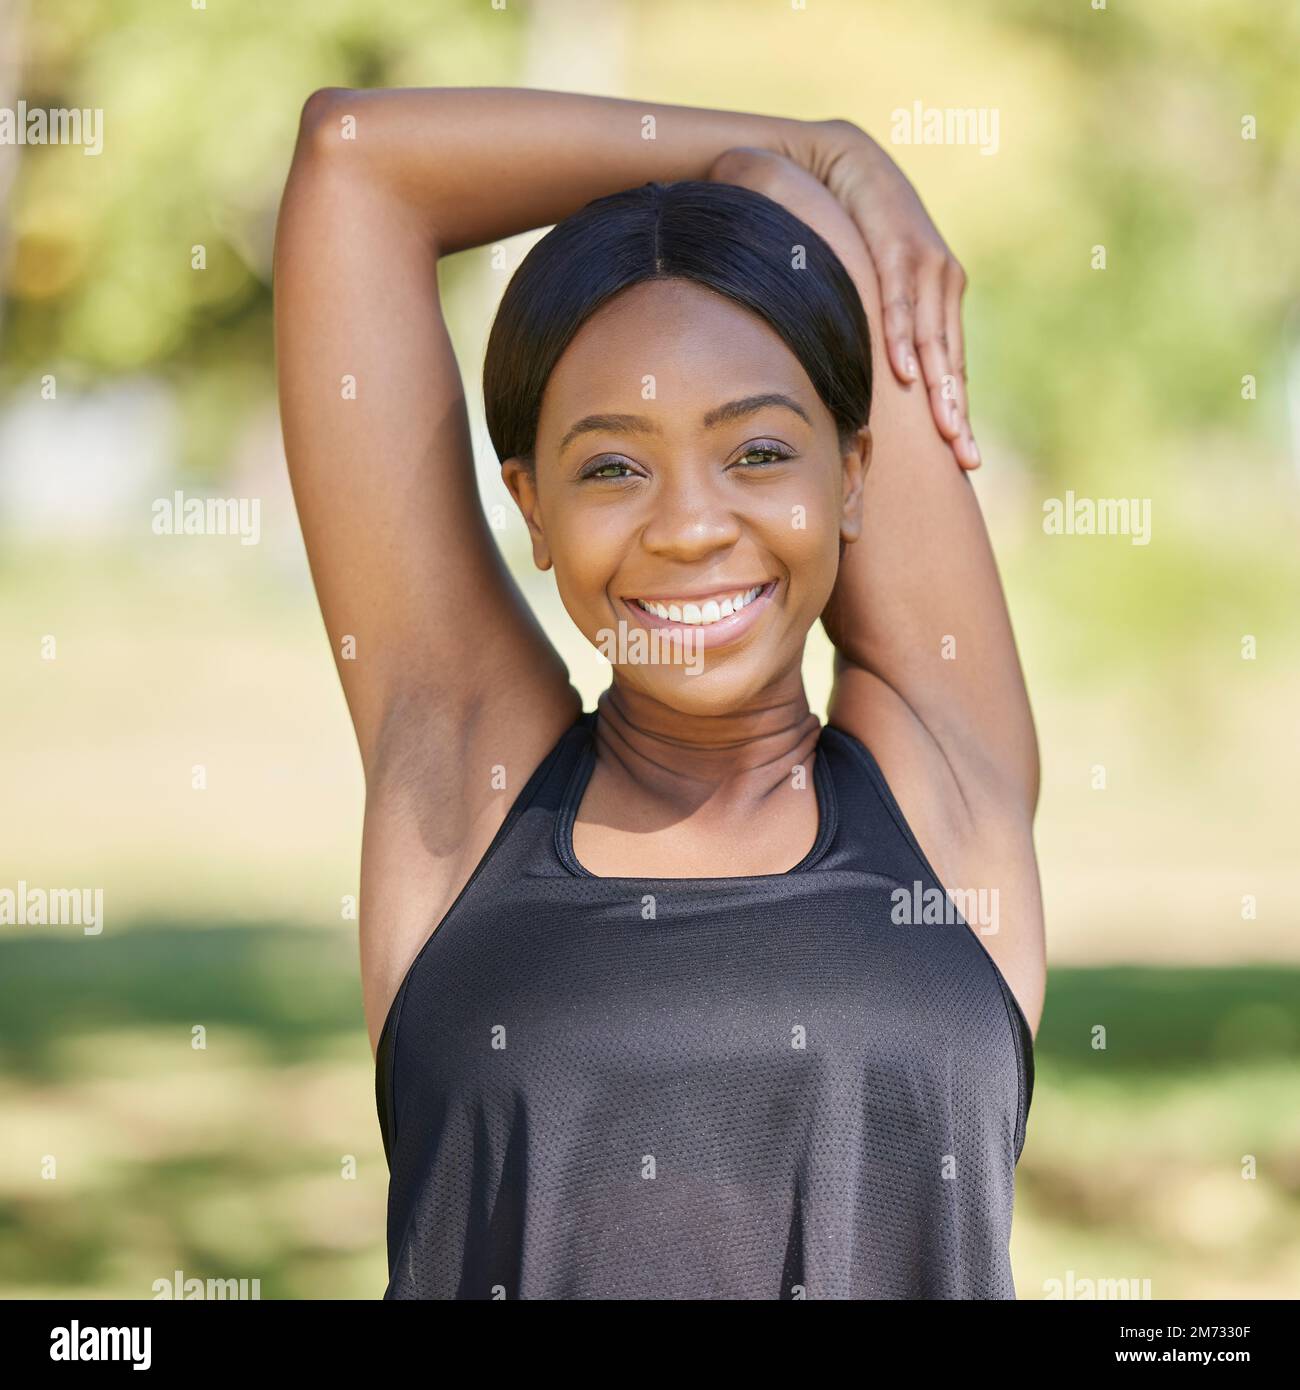 Schwarze Frau Porträt, Fitness und Stretching Arme im Naturpark für Gesundheit Wellness, Entspannungsübung oder Training Sporttraining. Lächeln, glücklich Stockfoto